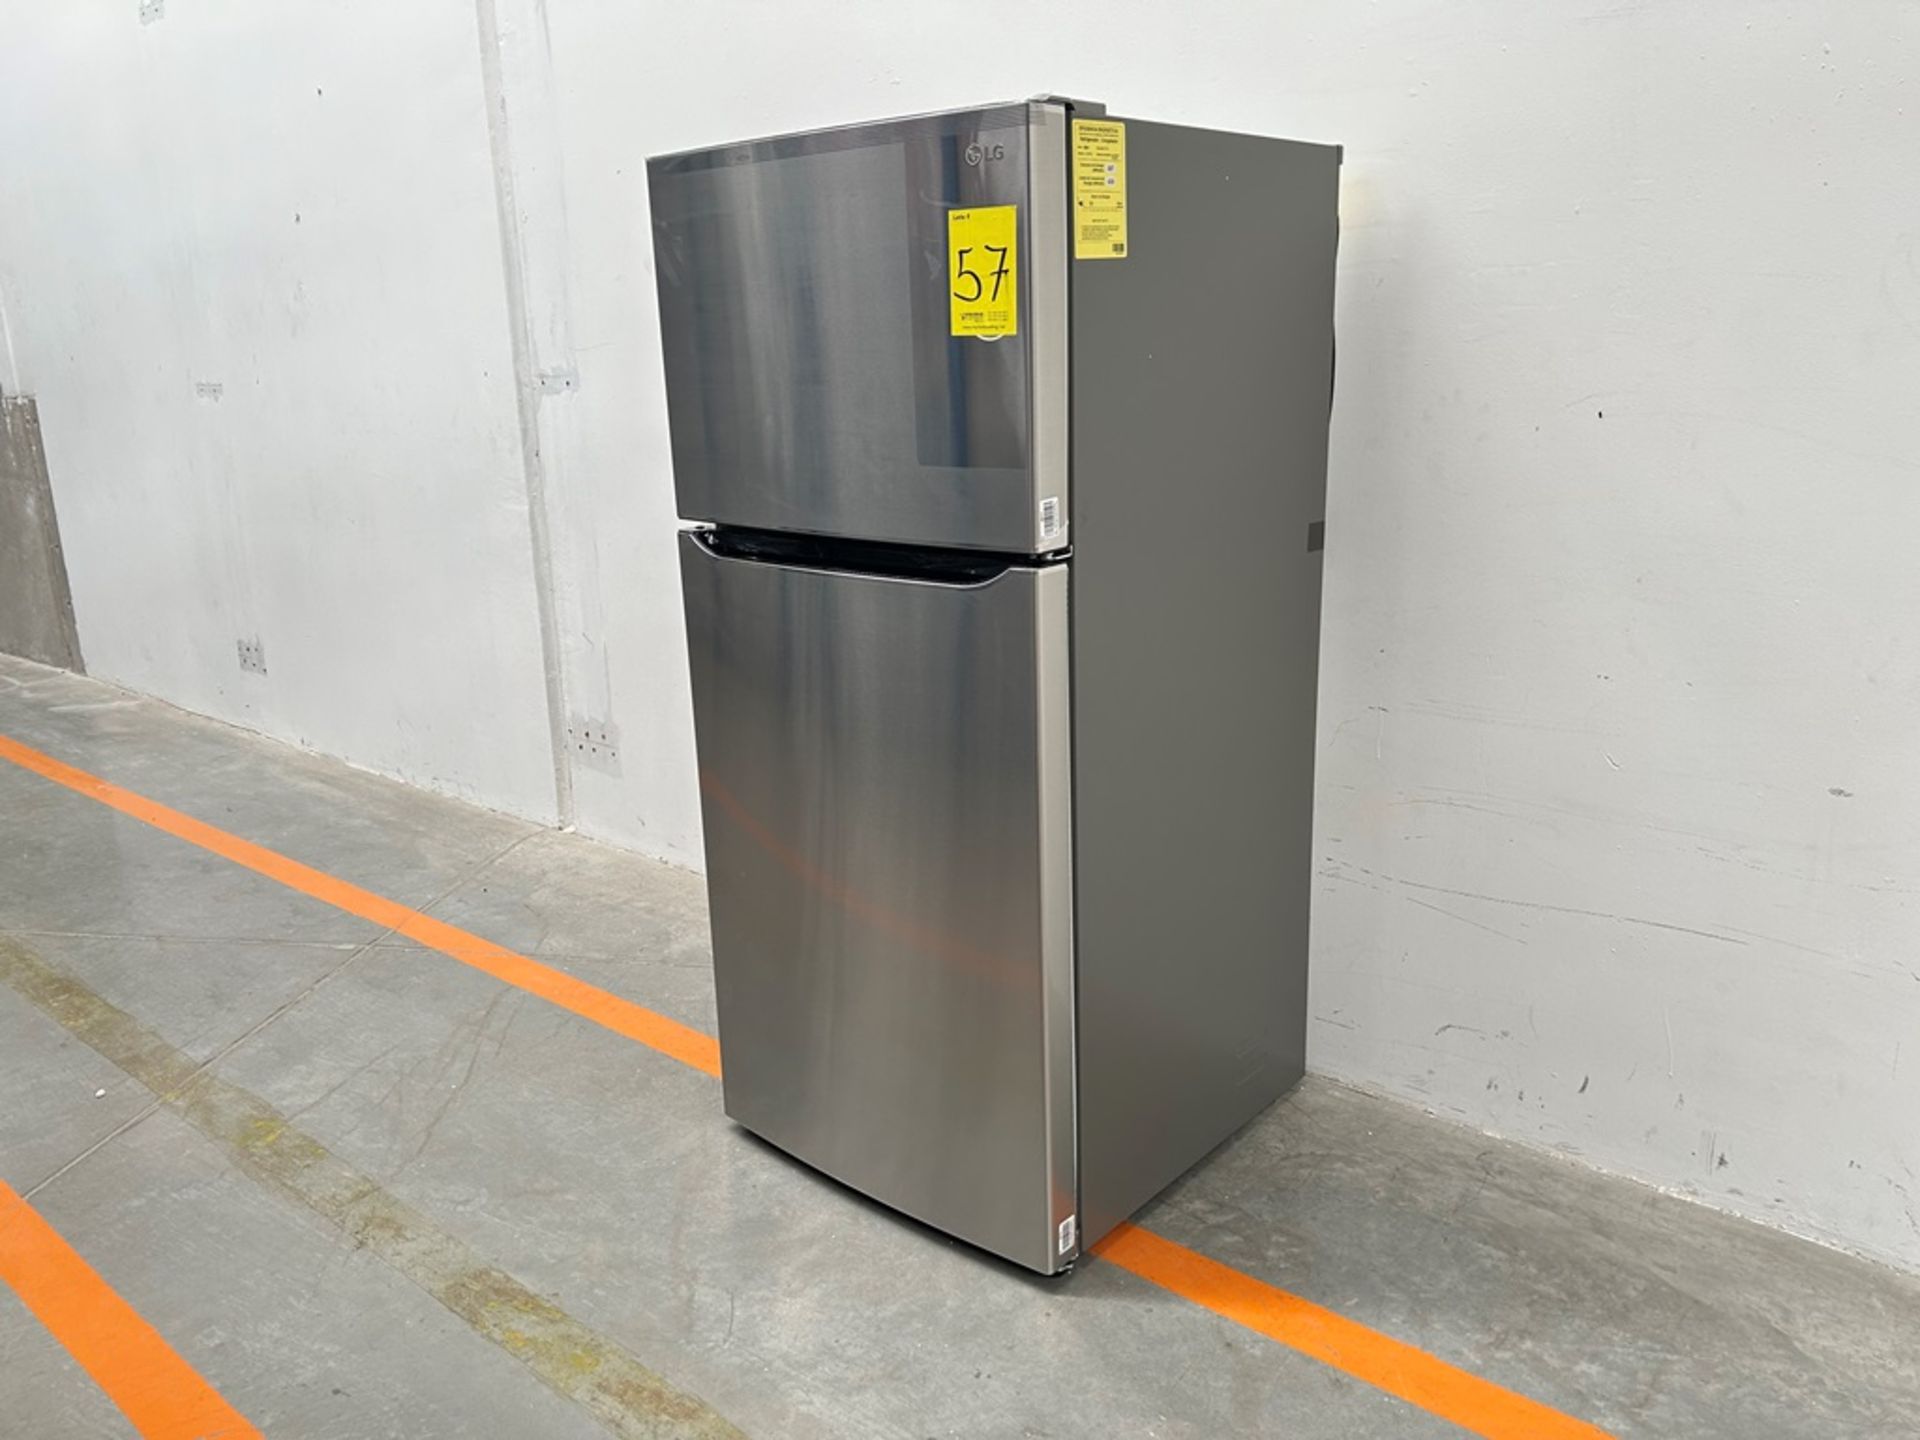 (NUEVO) Refrigerador Marca LG, Modelo LT57BPSX, Serie 2D689, Color GRIS - Bild 2 aus 7